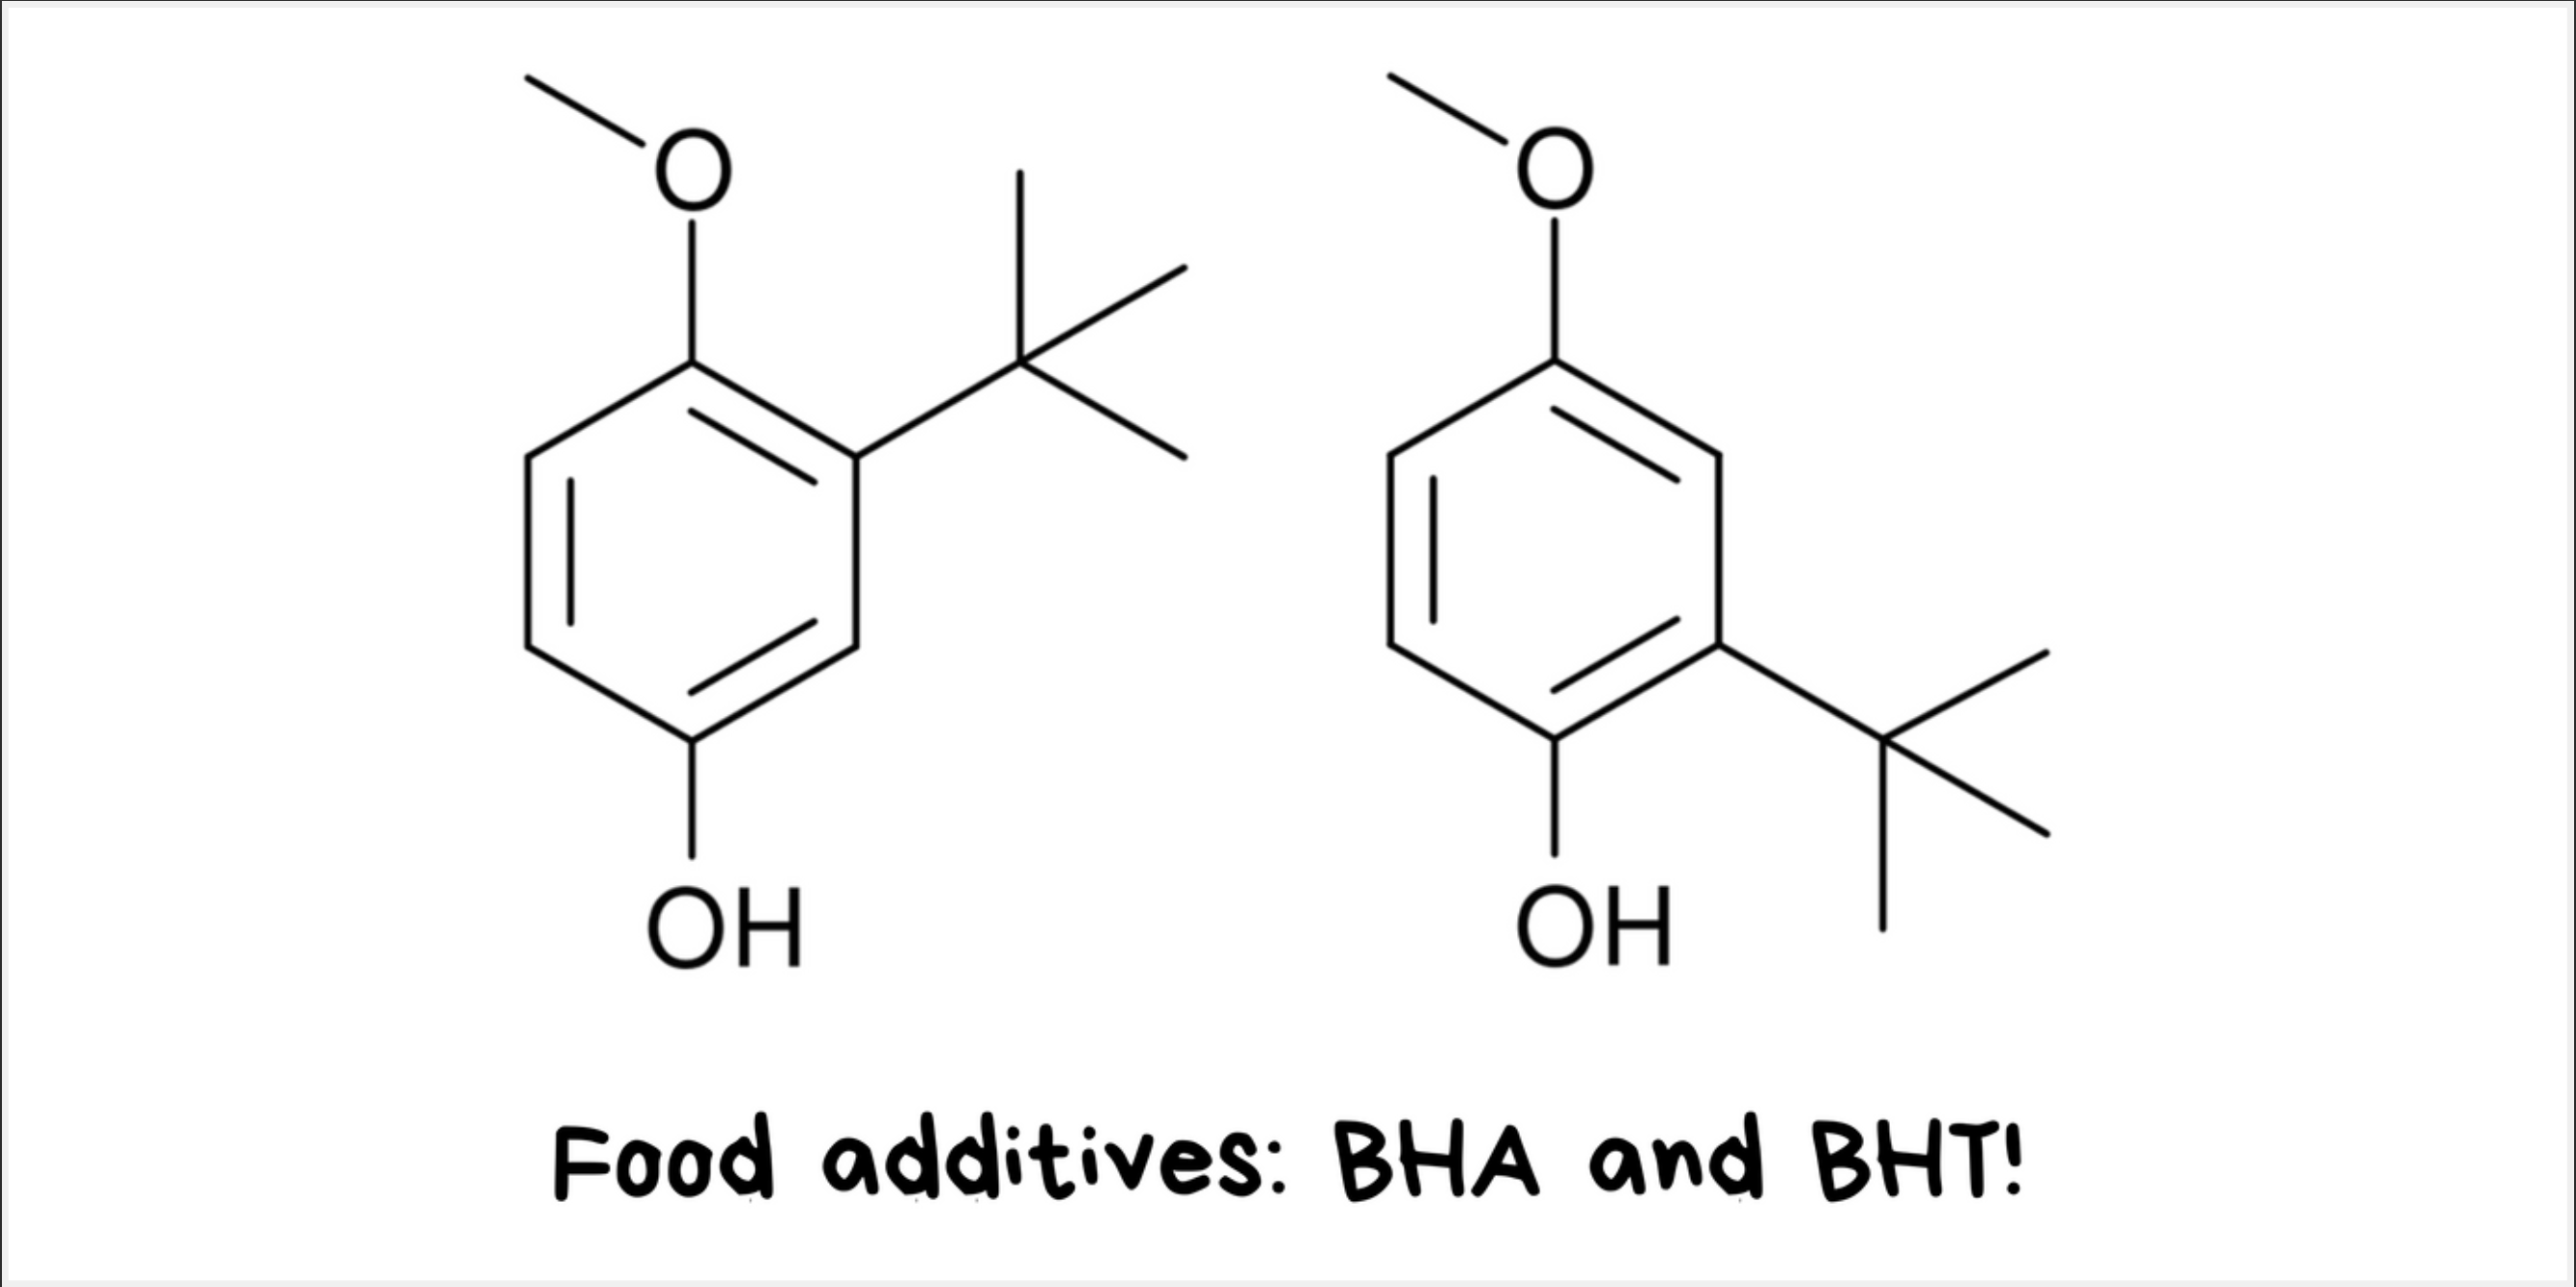 Food additives: BHA (Butylated Hydroxyanisole) and BHT (Butylated Hydroxytoluene)!